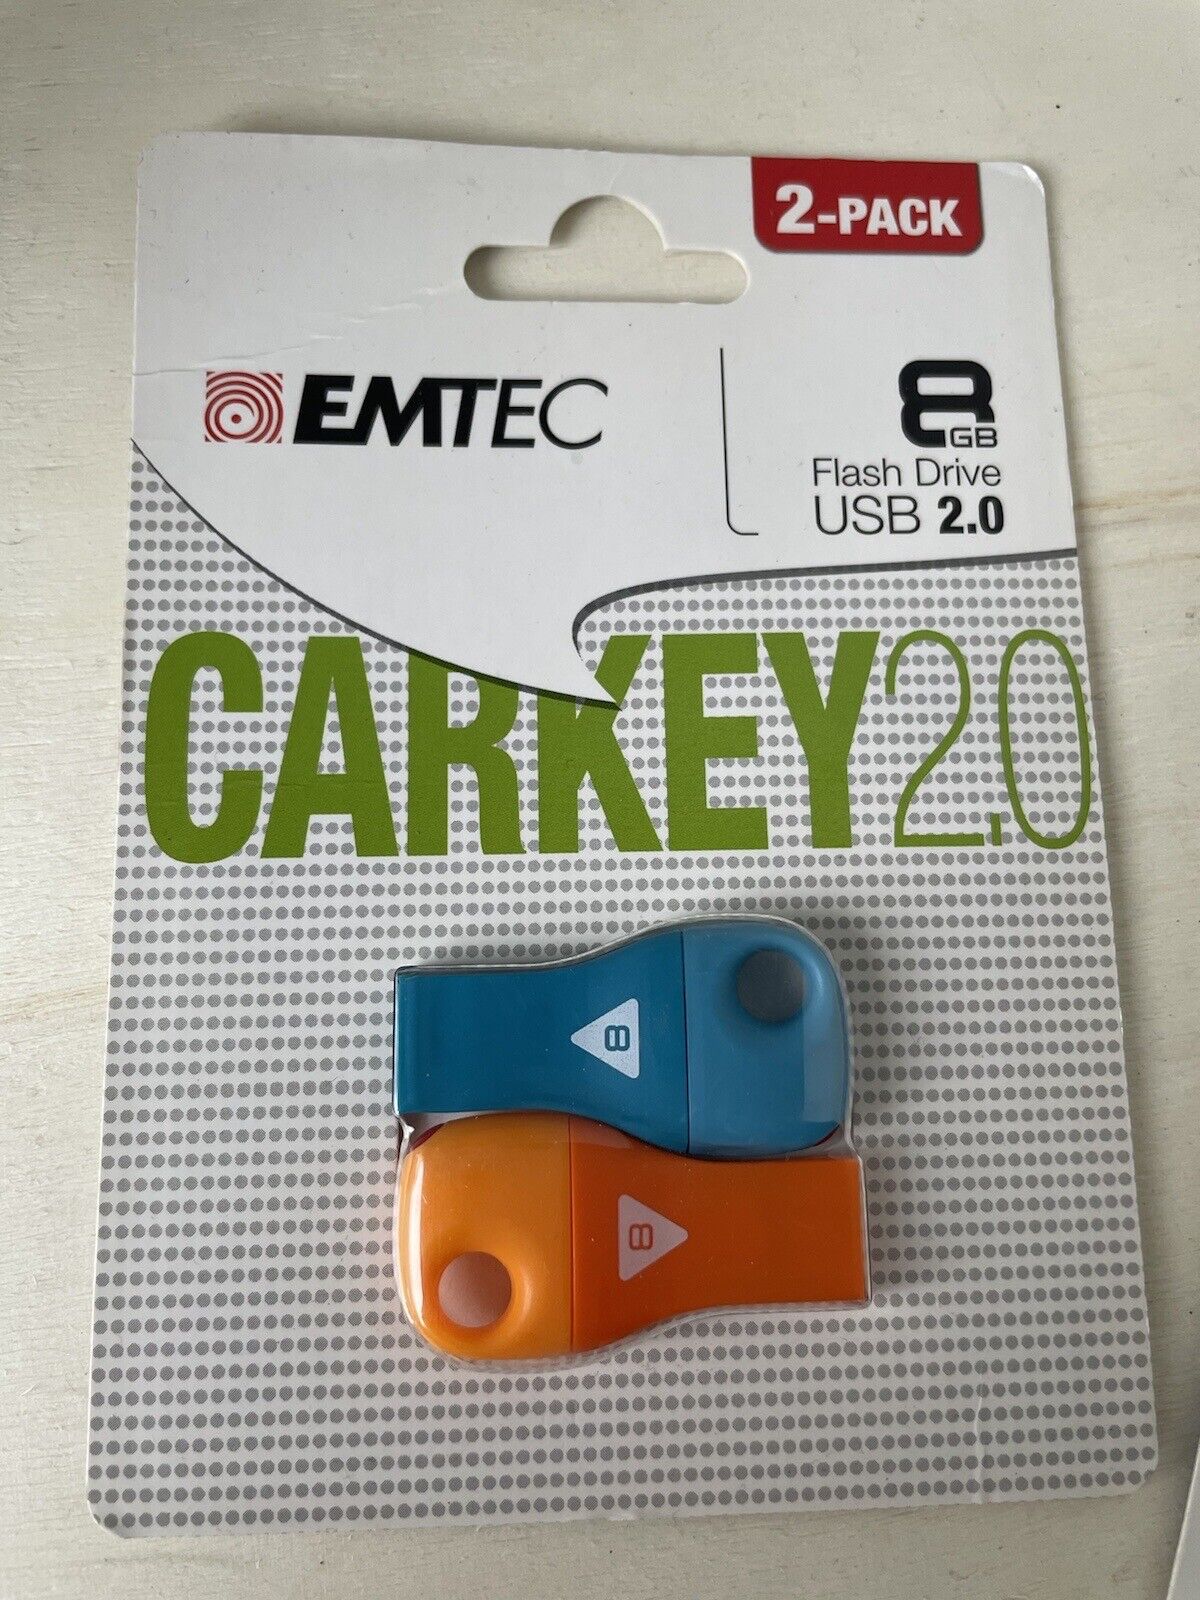 2 Pack NEW EMTEC 8GB FLASH DRIVE USB Carkey 2.0